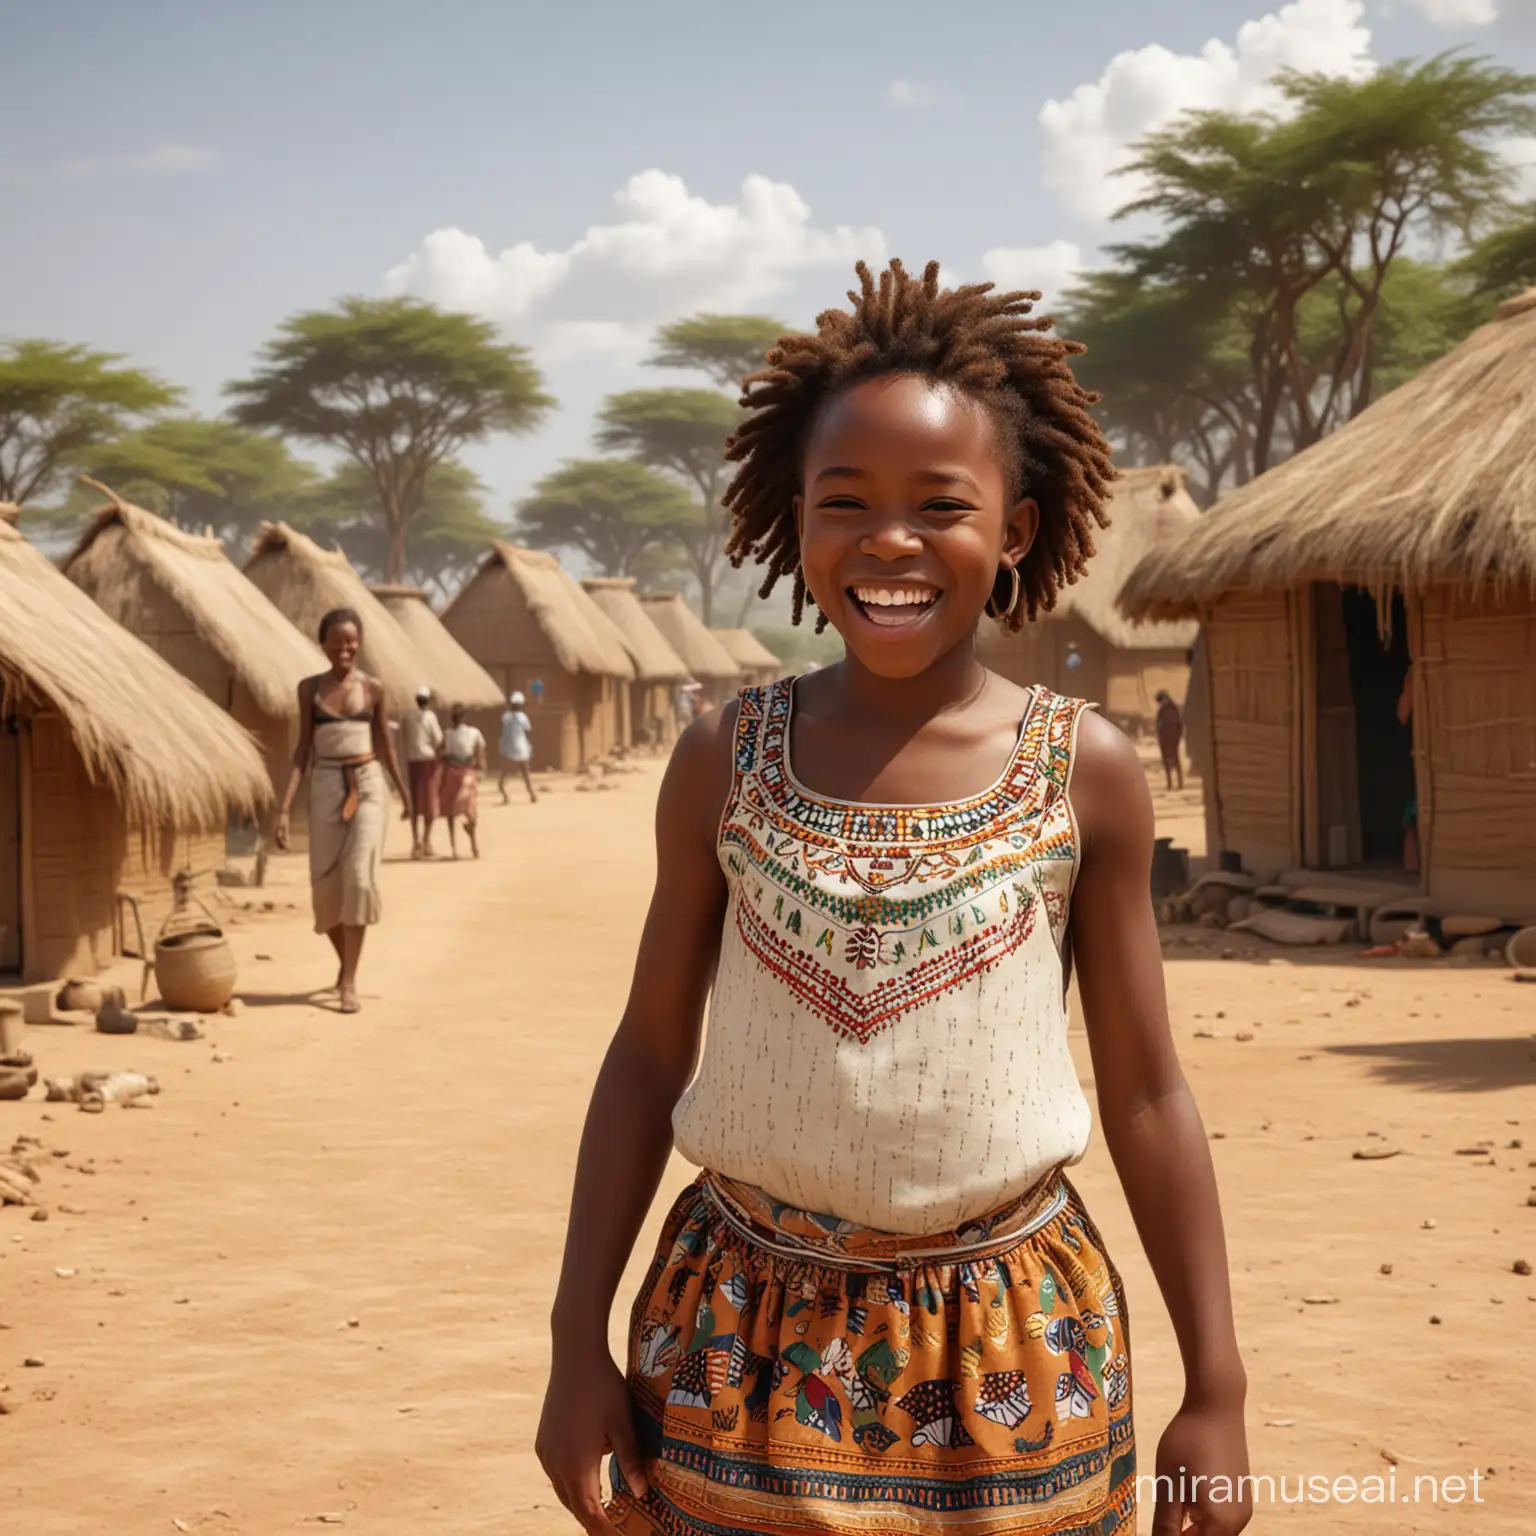 Joyful African Girl in Traditional Village Scene